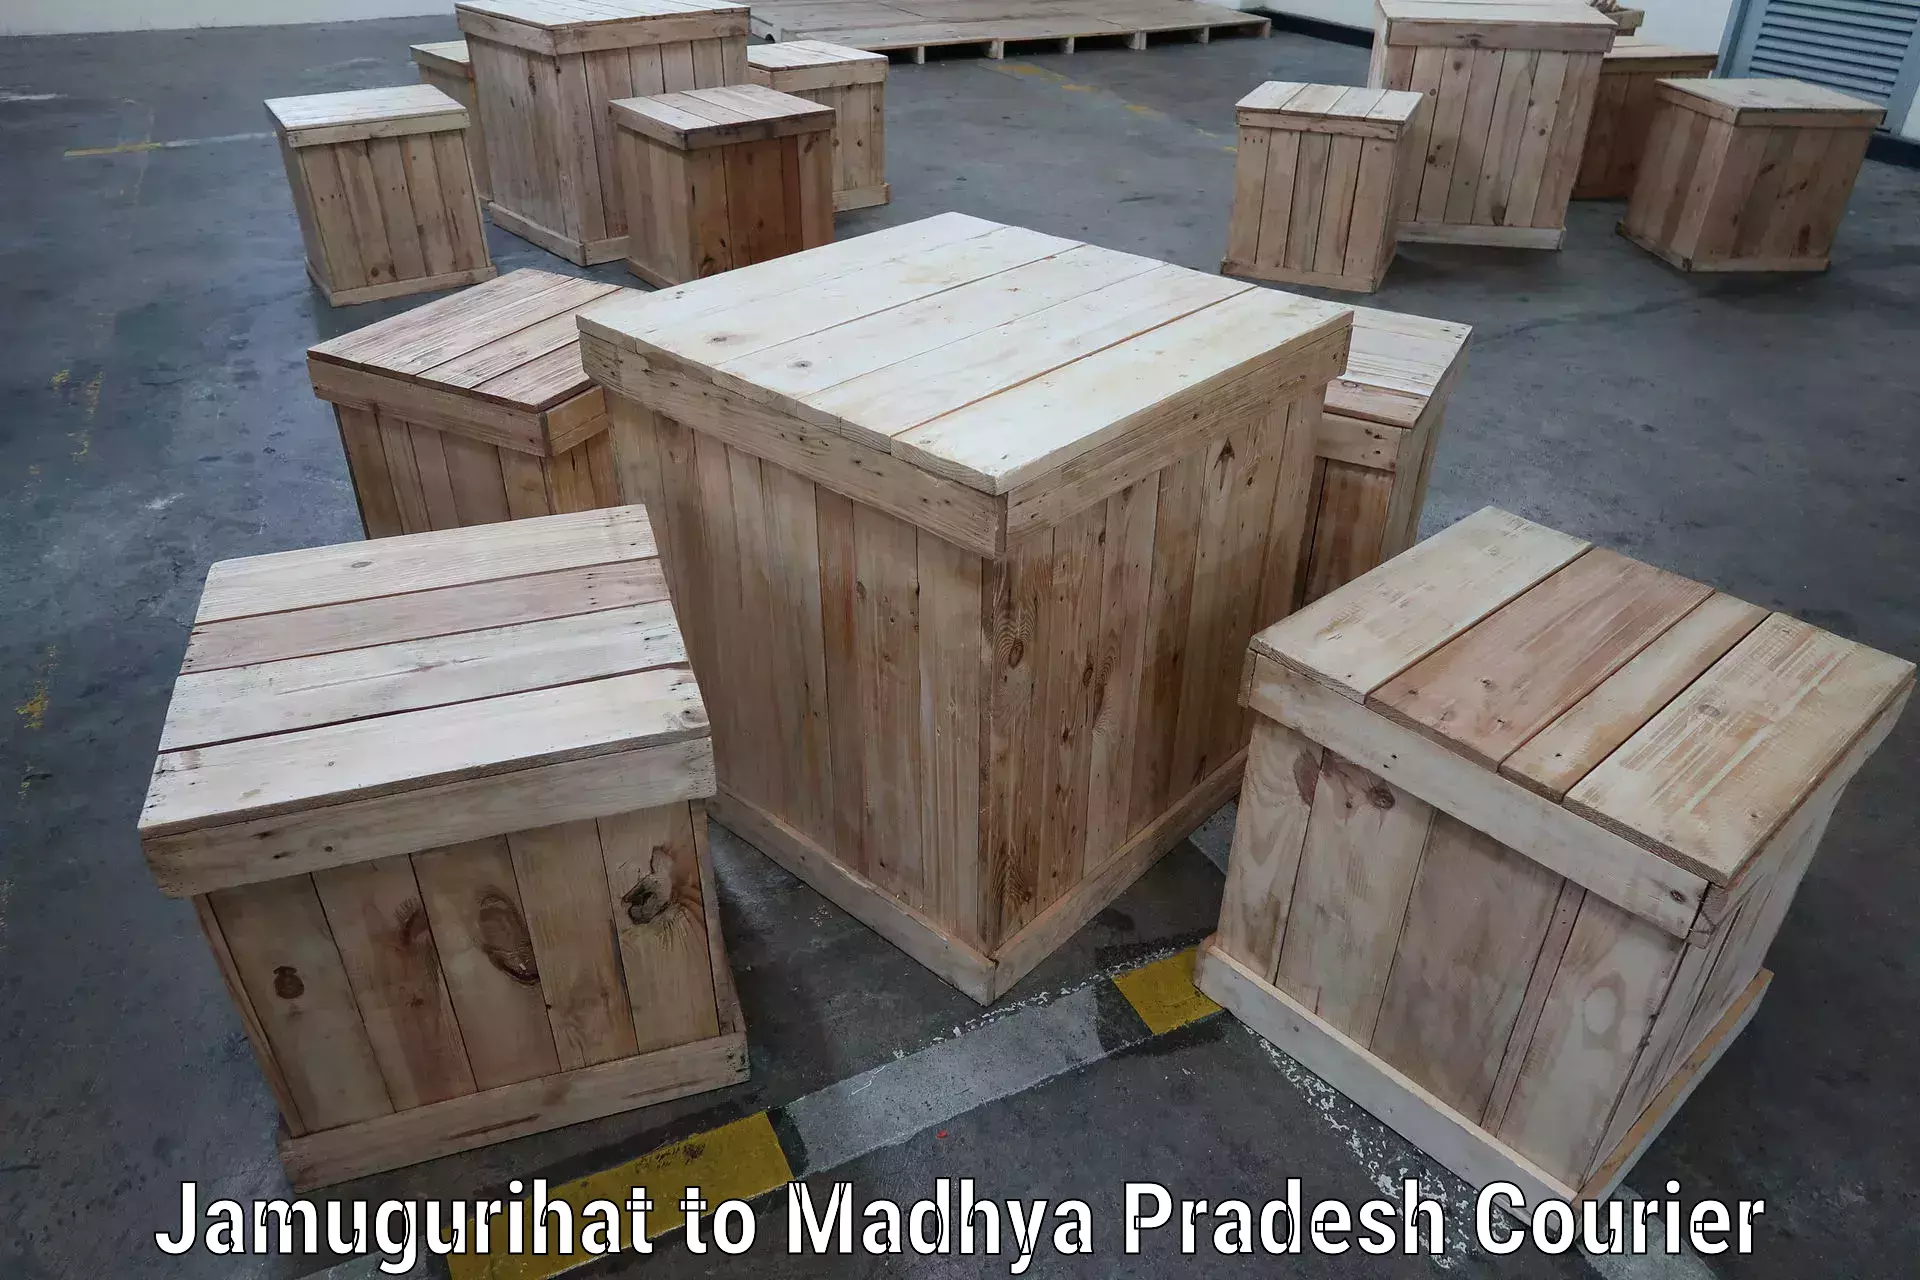 Expedited shipping solutions Jamugurihat to Madhya Pradesh